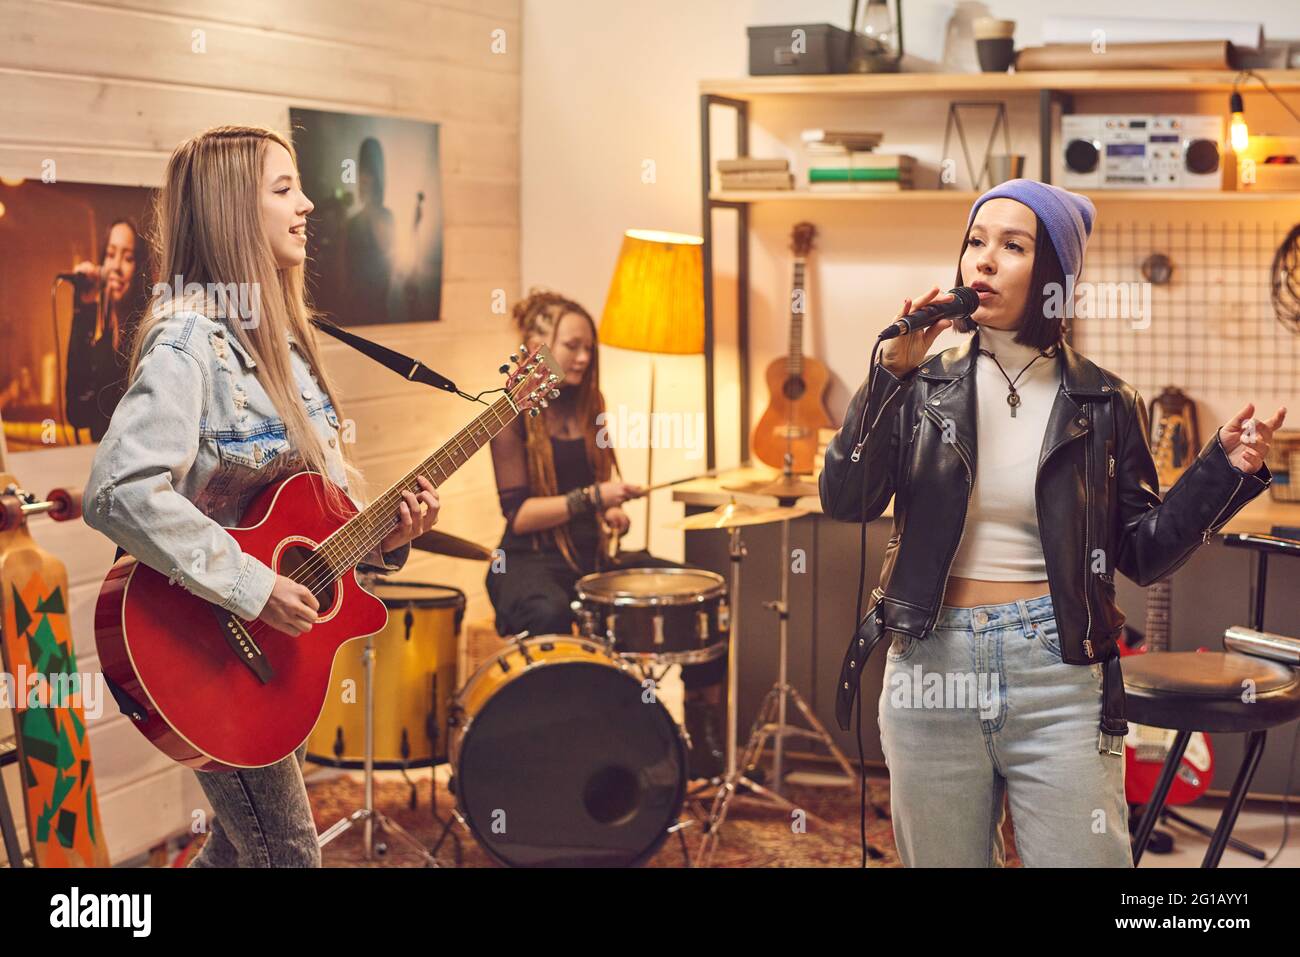 Band femminile composta da tre ragazze che registrano canzoni in studio Foto Stock